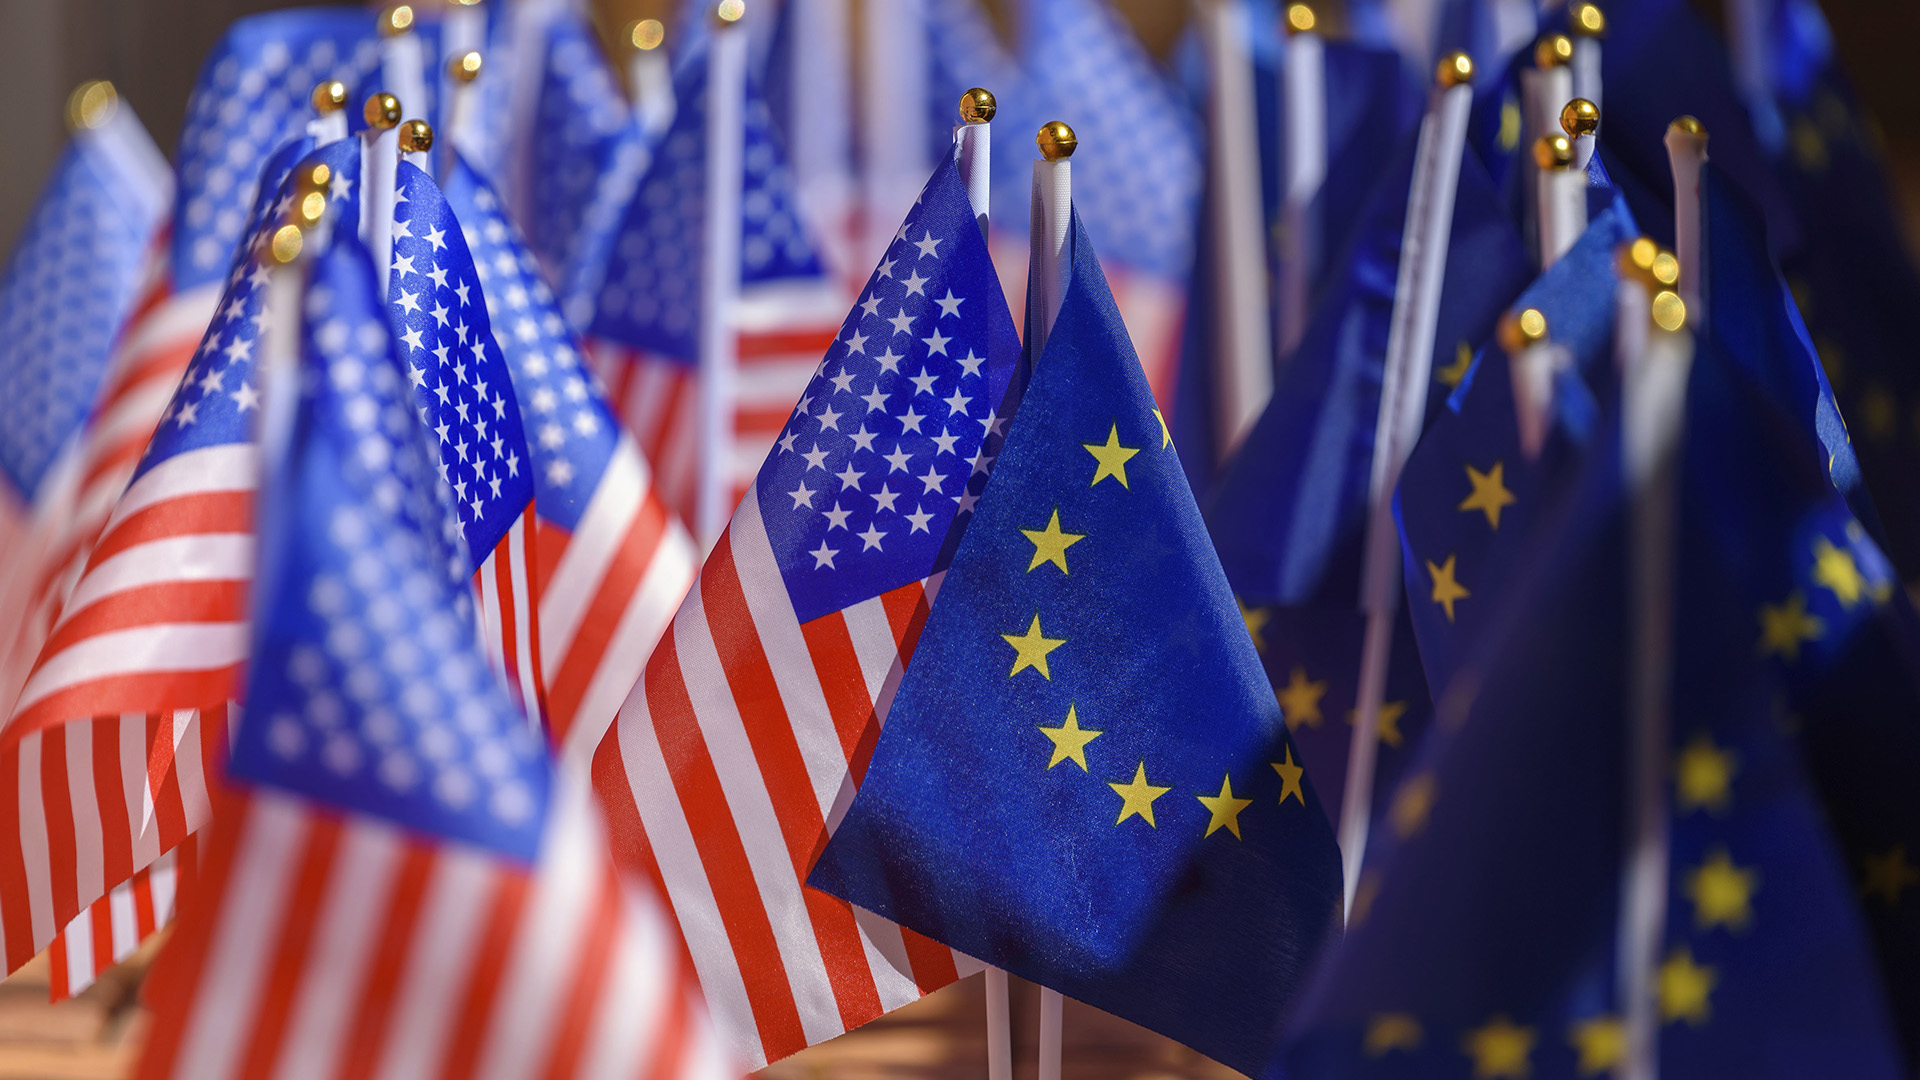 Flaggen der EU und der USA